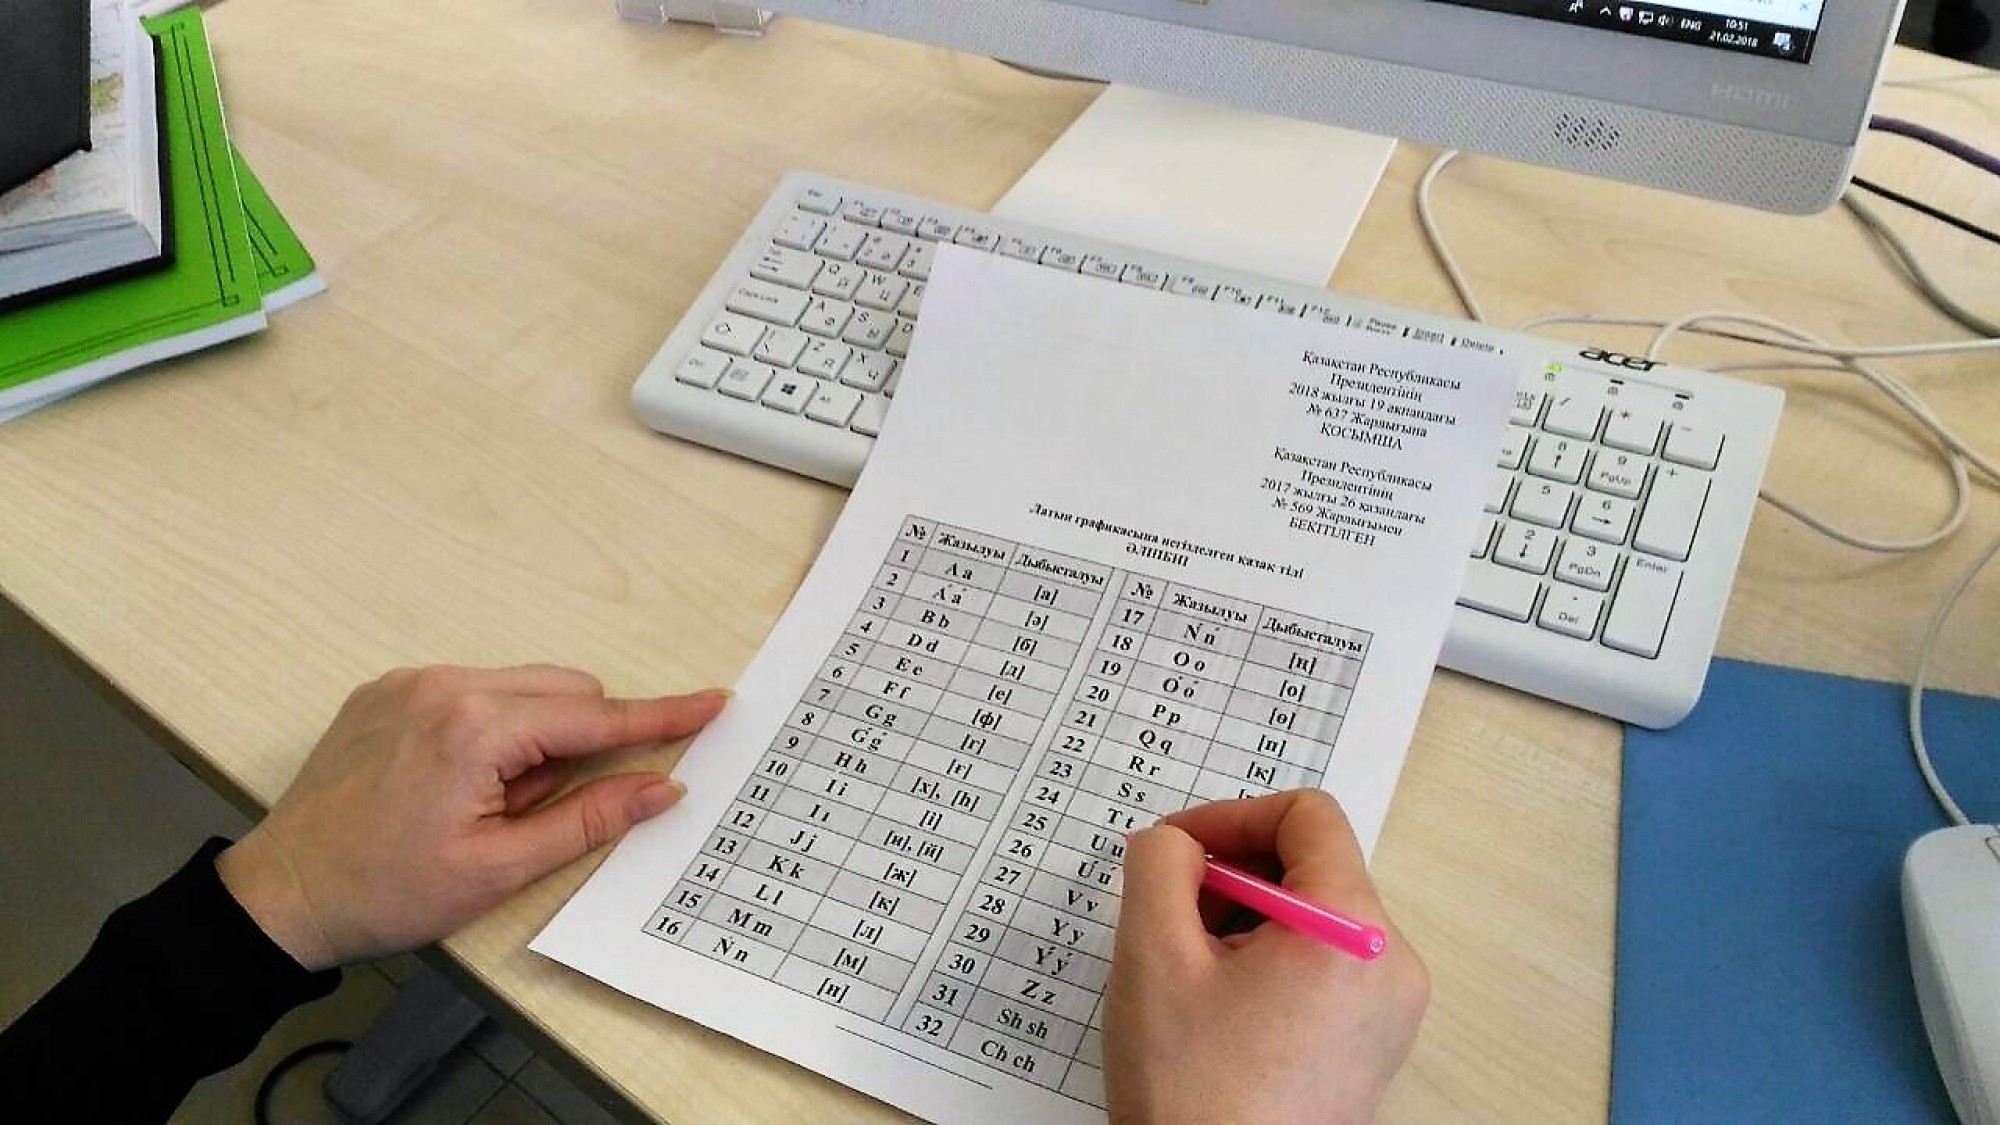 Астанчане примут участие в написании общенародного диктанта на новом казахском алфавите 